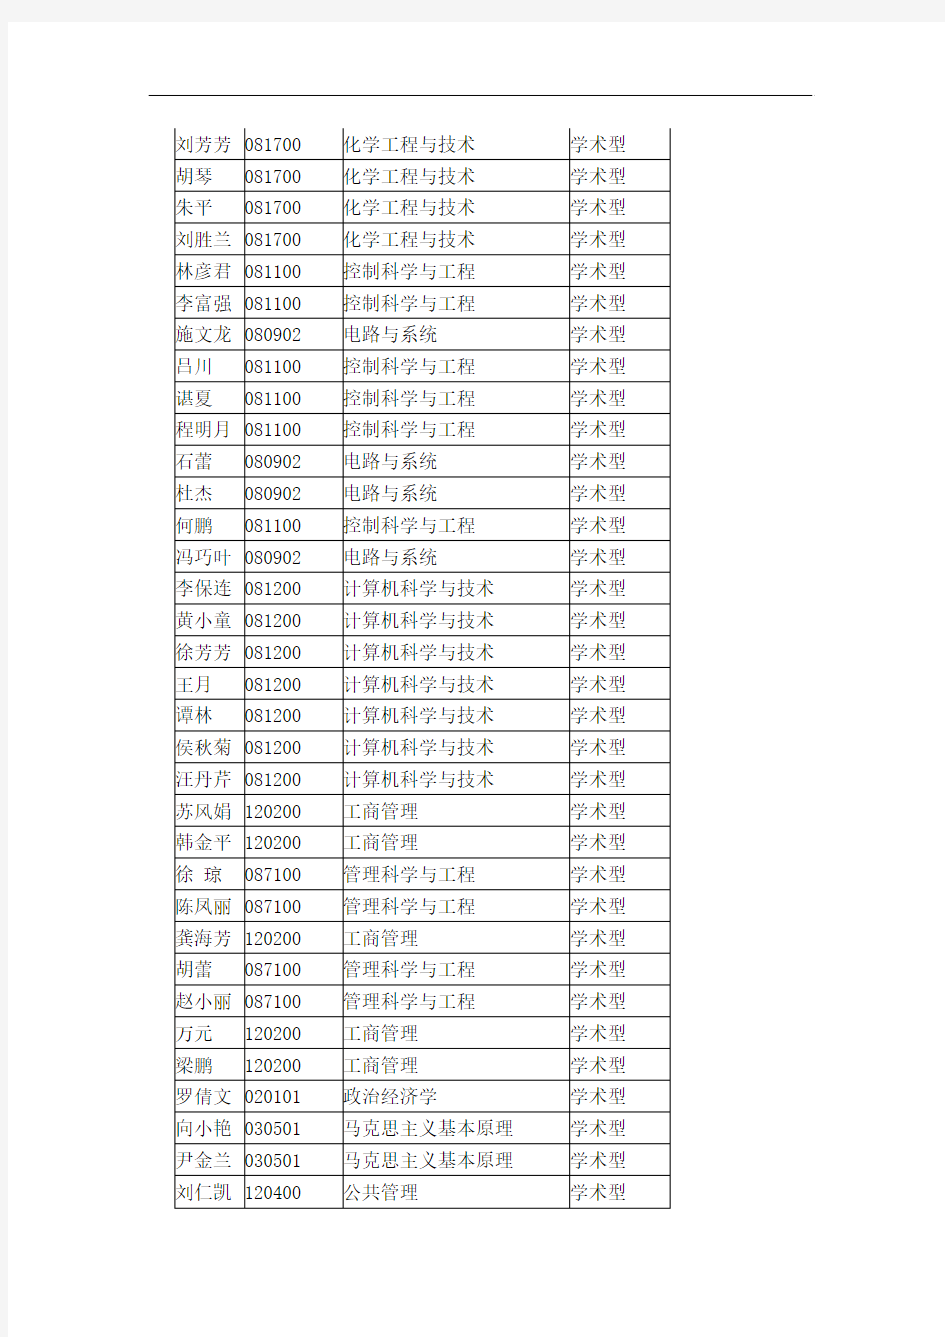 武汉科技大学2012年拟接收推荐免试硕士研究生名单